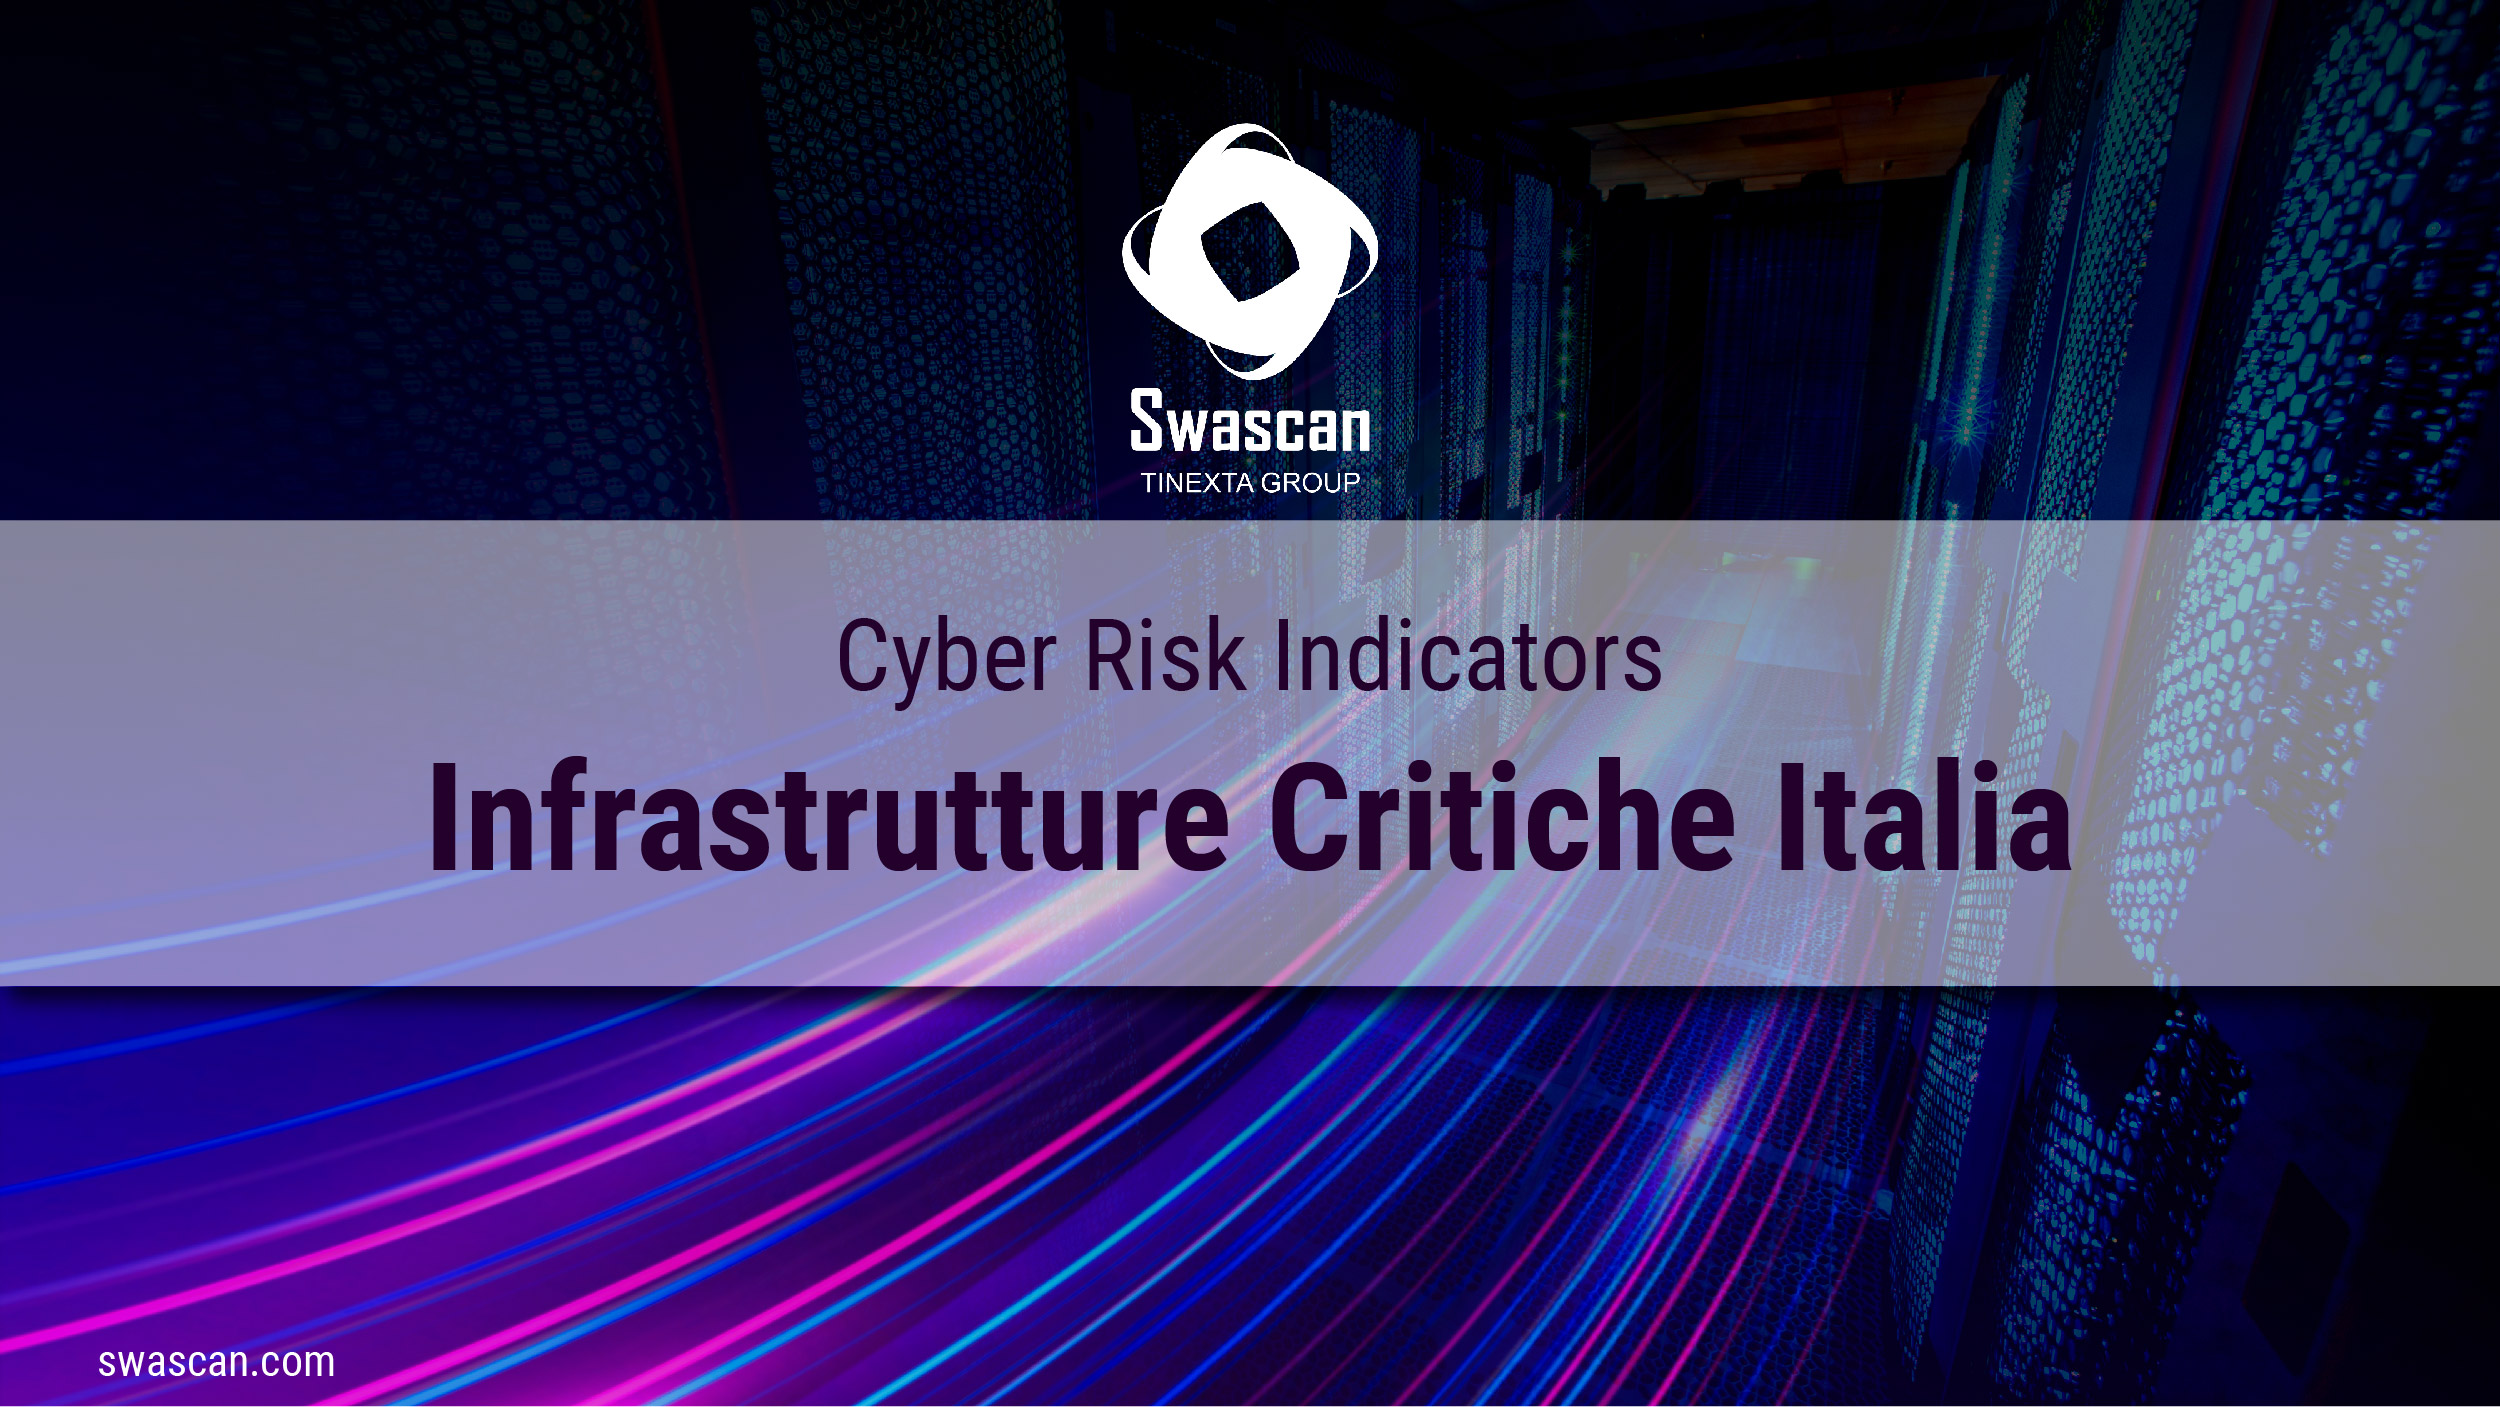 Cyber Risk Indicators: Infrastrutture critiche Italia